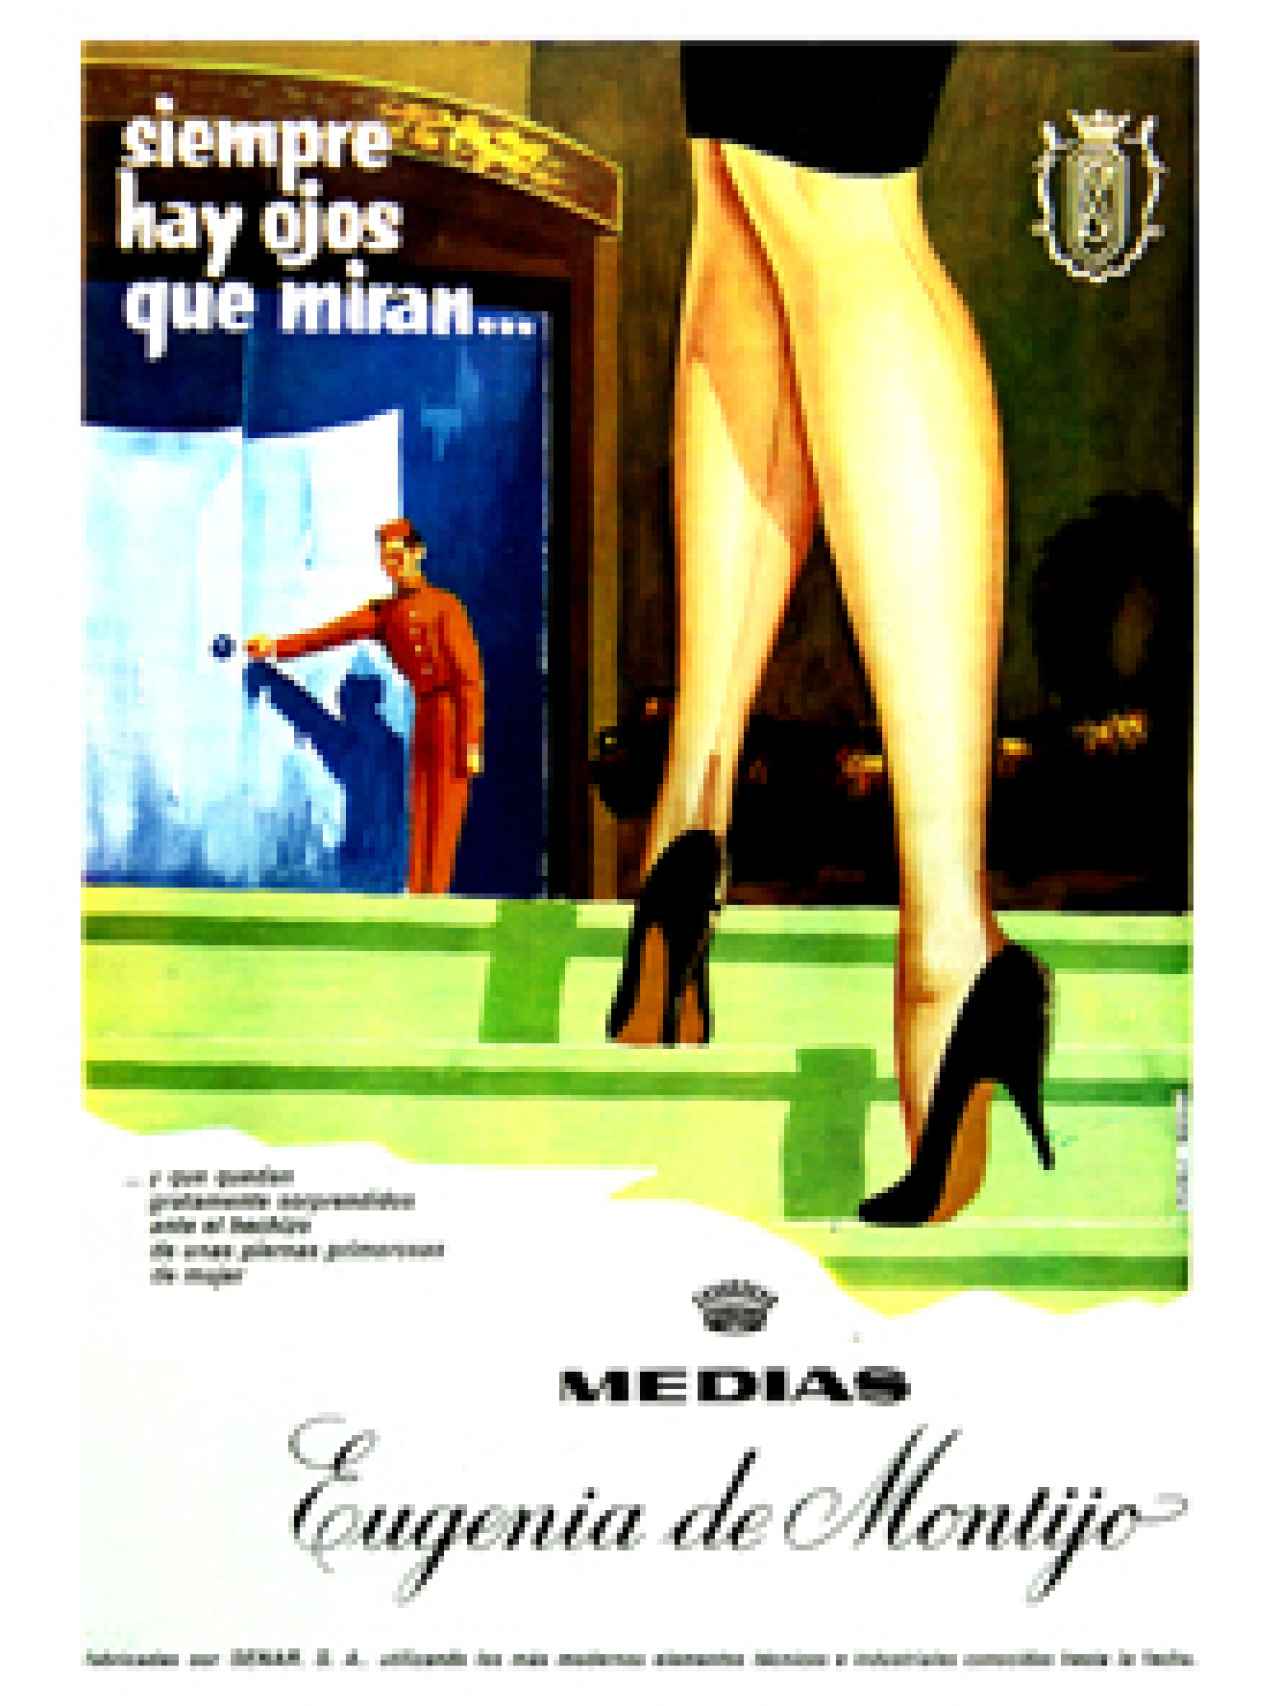 Publicidad de la marca inicial, Eugenia de Montijo.